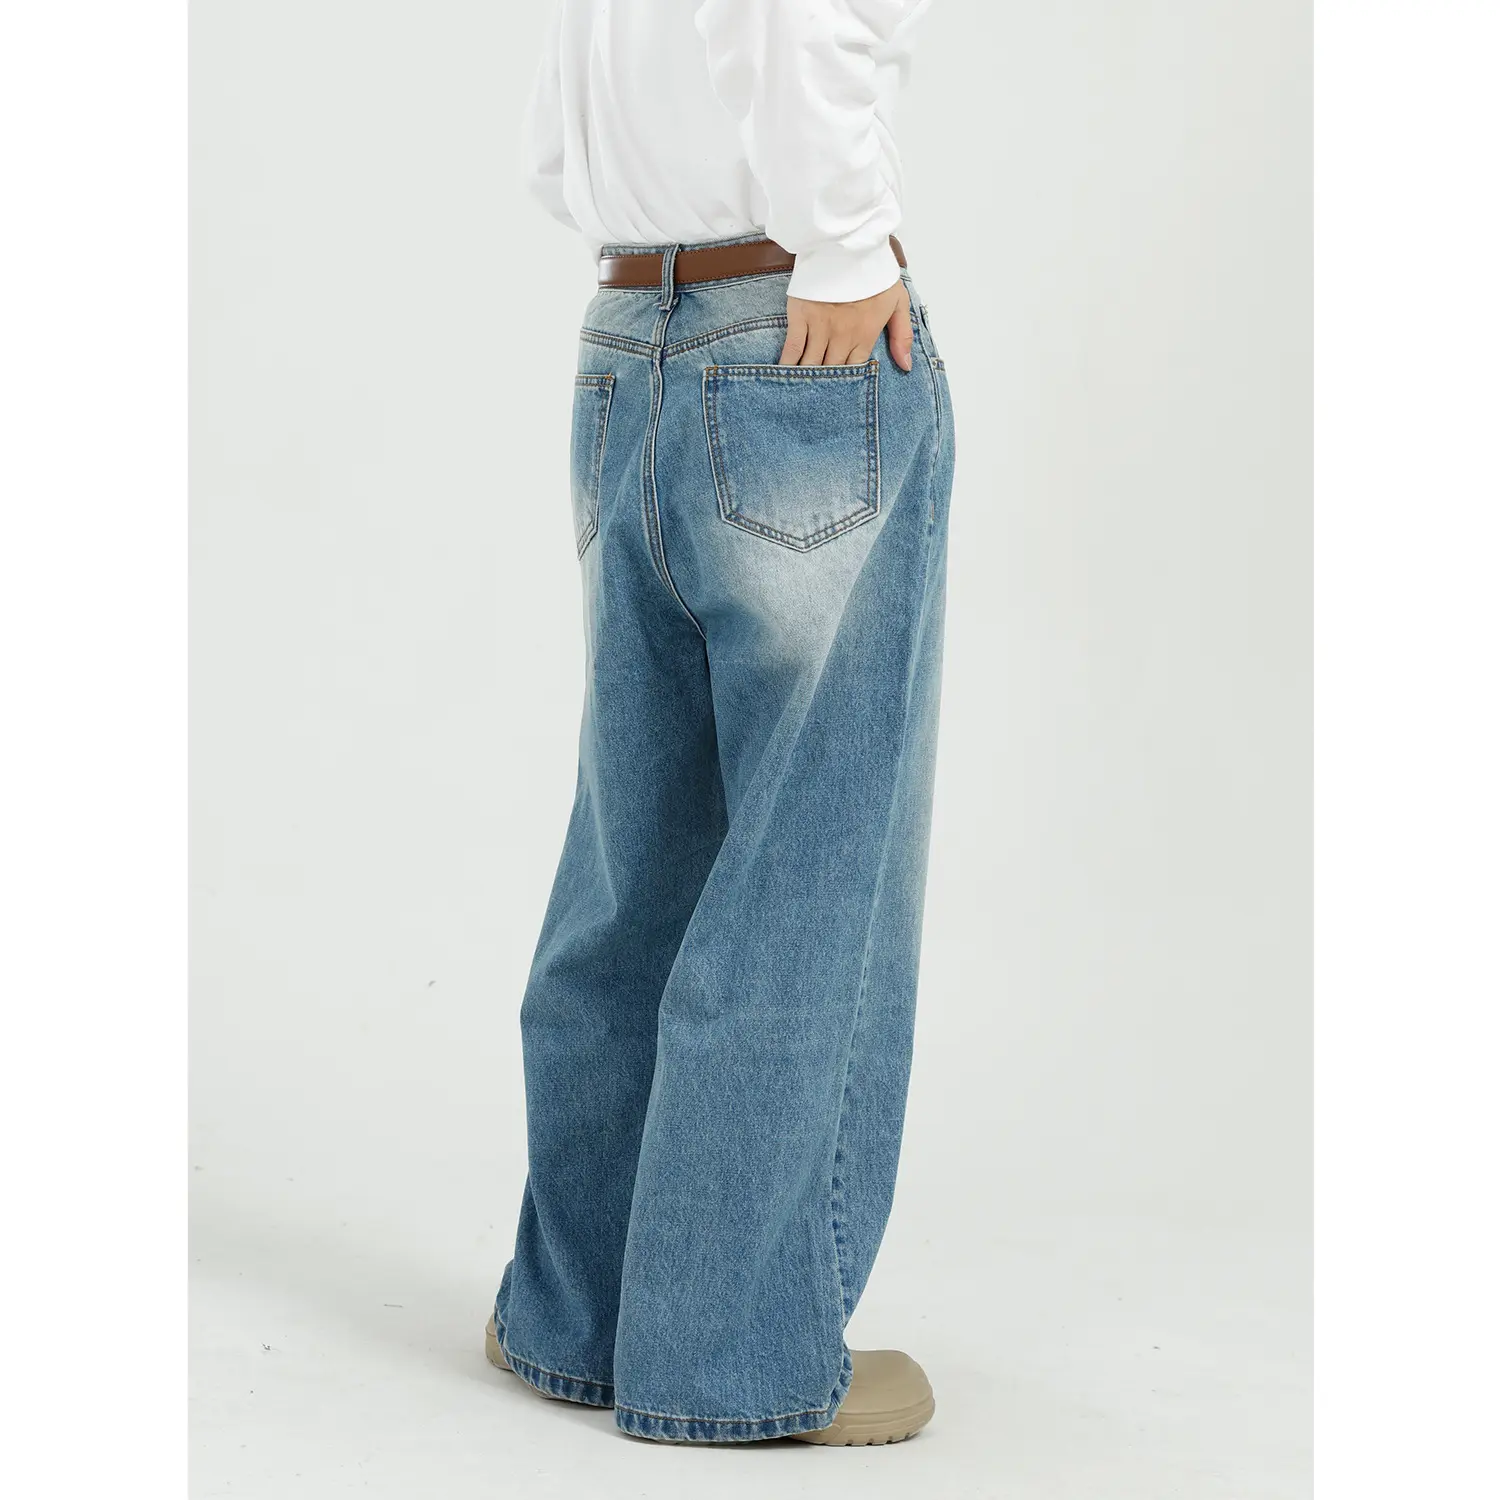 DOMAX Fashion Men Wash Designer Baggie Flared Blue Loose Fit Distressed Denim Wild Leg Pants Jeans pour hommes nouvelle mode